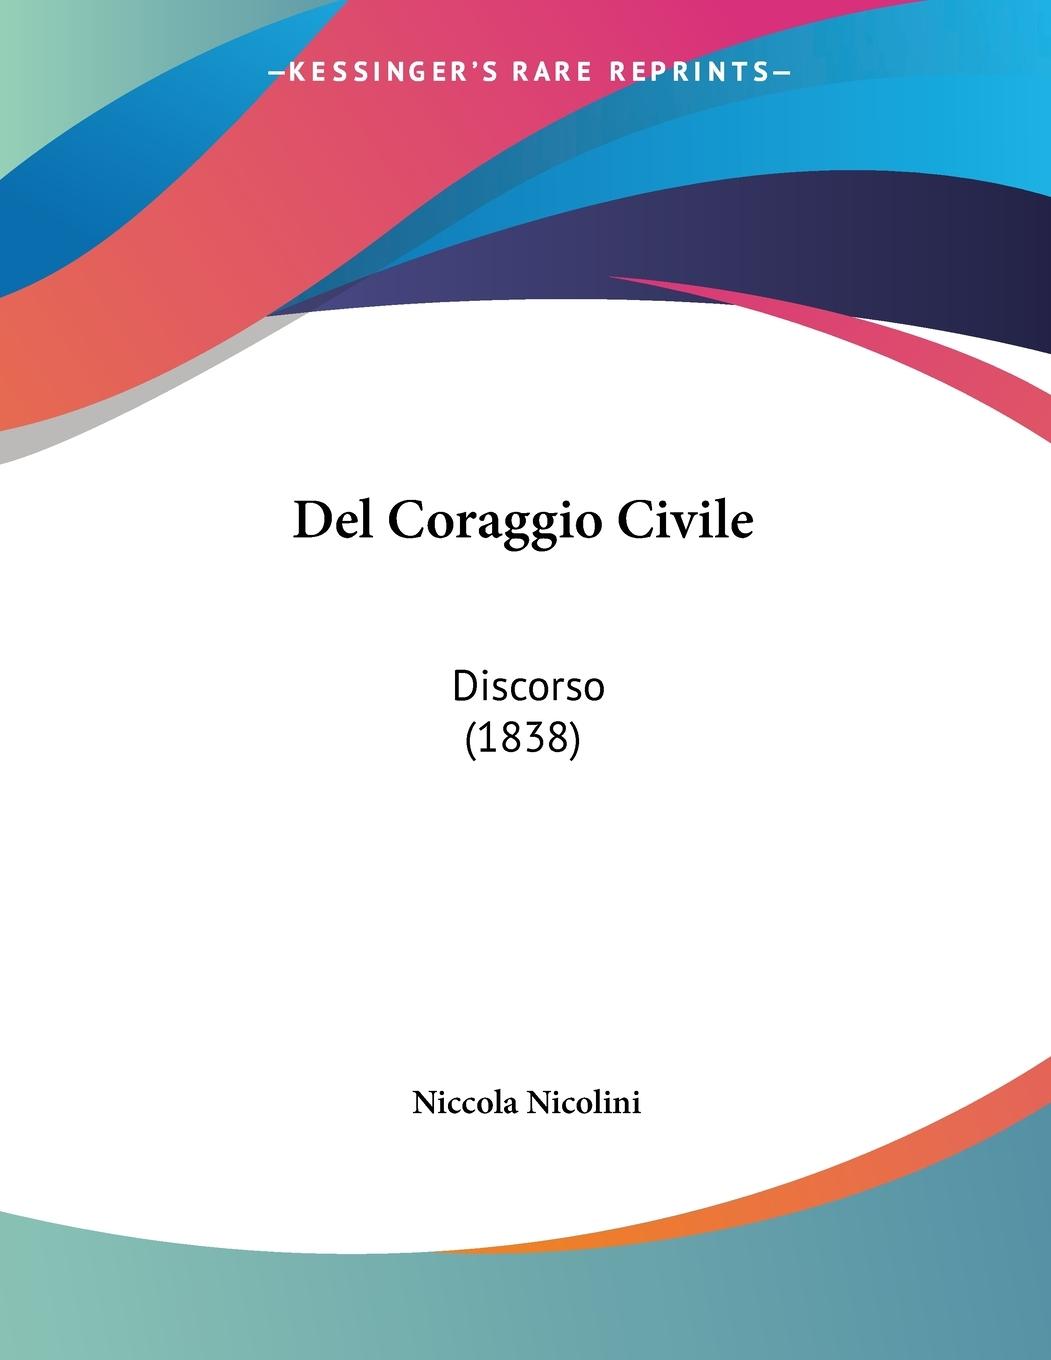 Del Coraggio Civile - Nicolini, Niccola